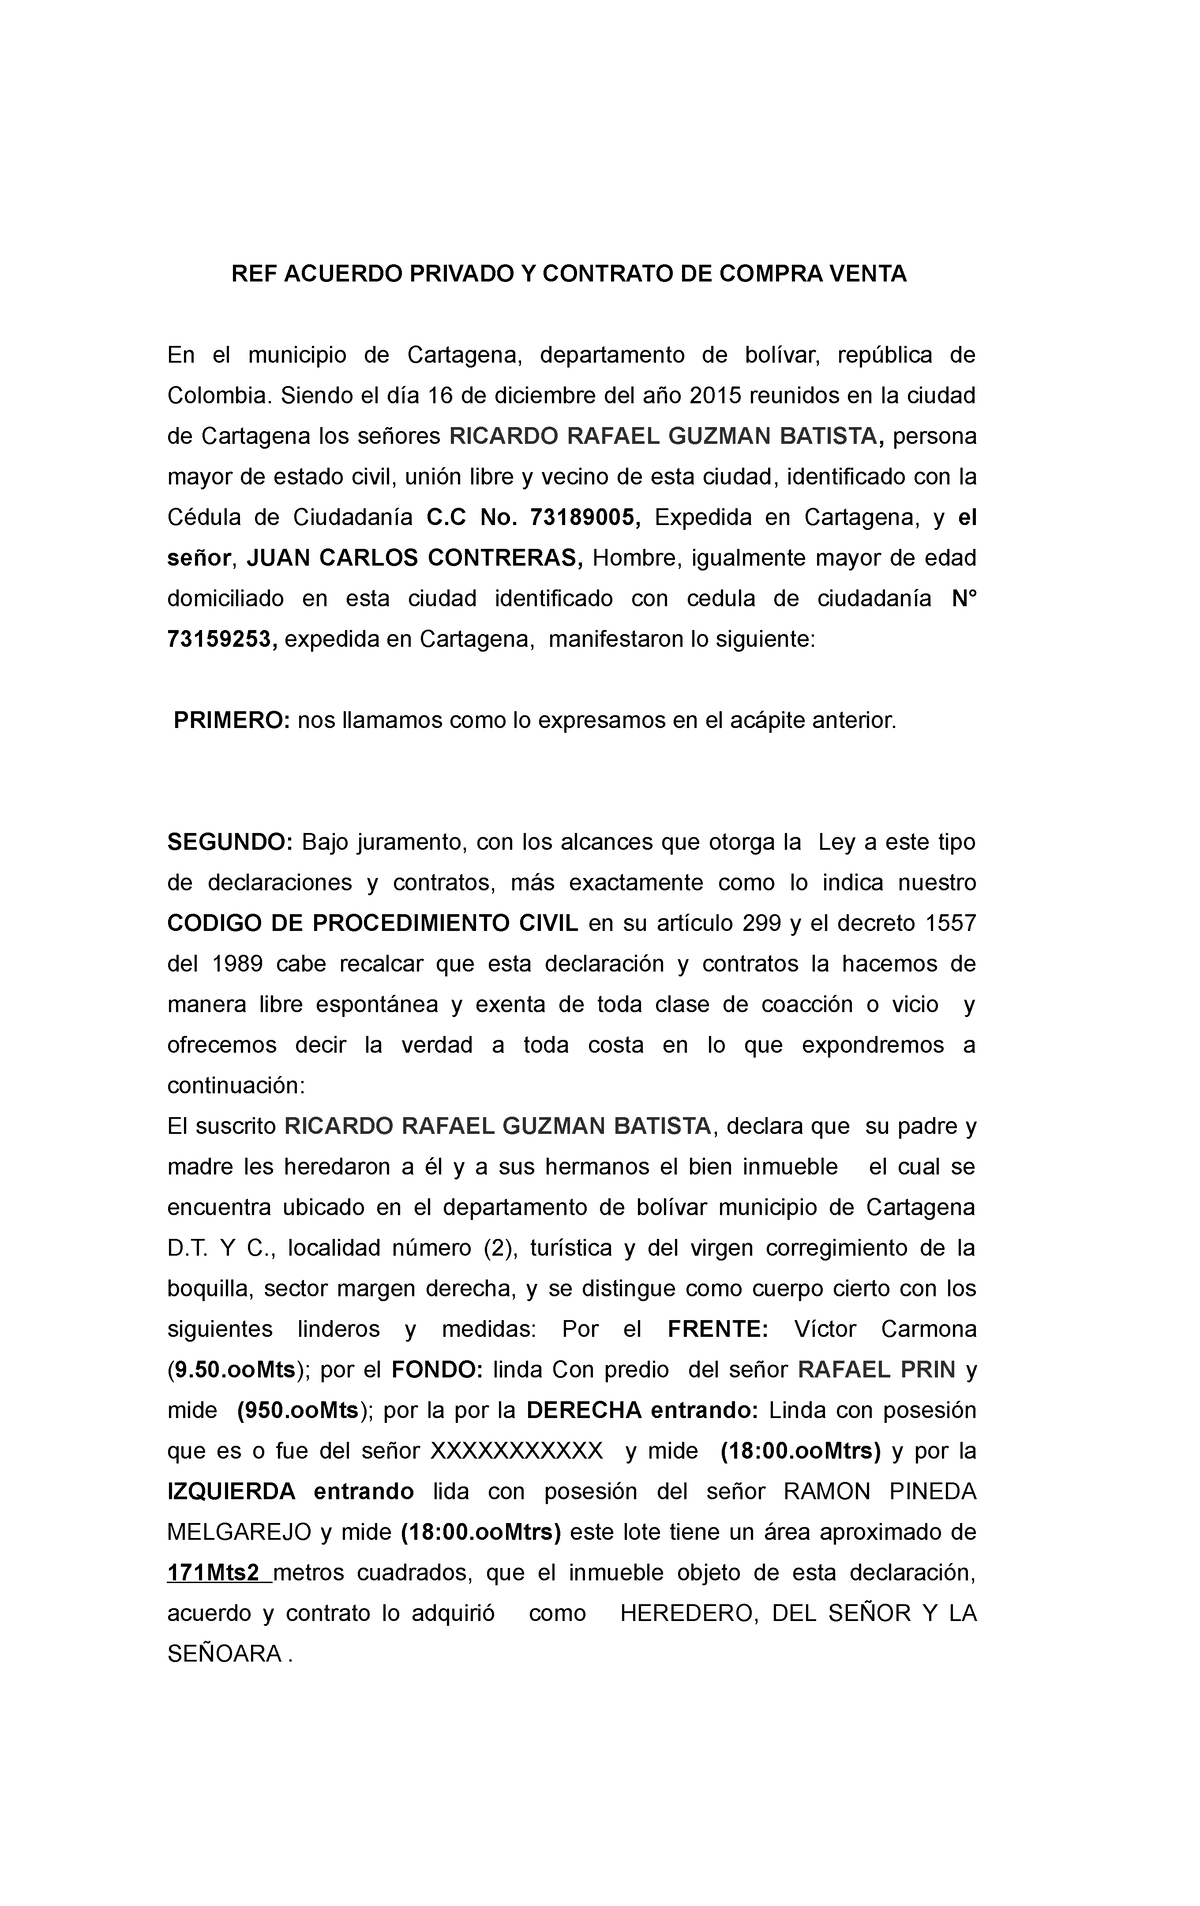 Contrato De Compra Venta Juen Carlos Ref Acuerdo Privado Y Contrato De Compra Venta En El 6219